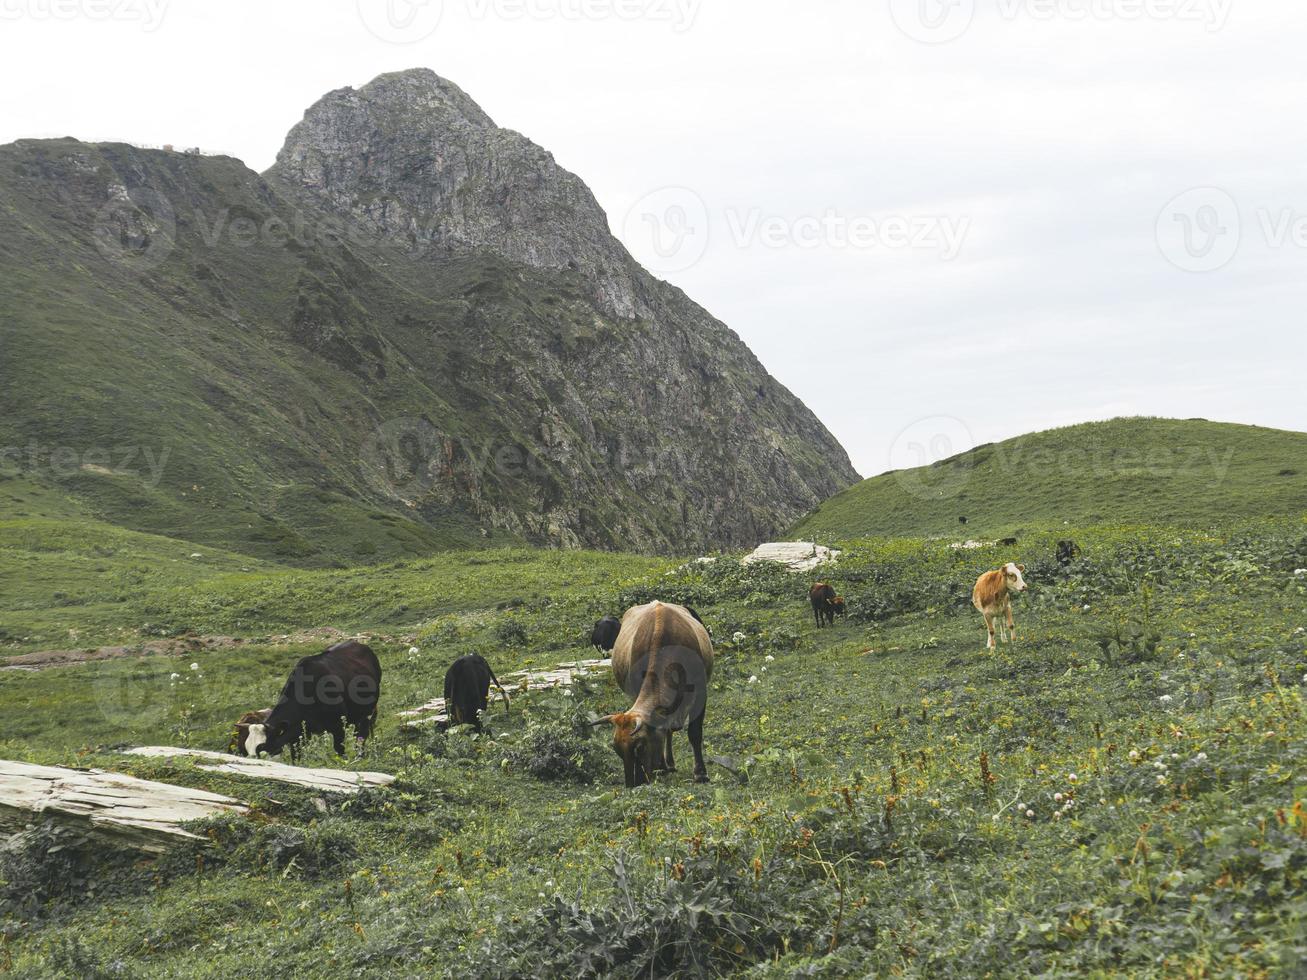 vacas no prado das montanhas do cáucaso. roza khutor, rússia foto